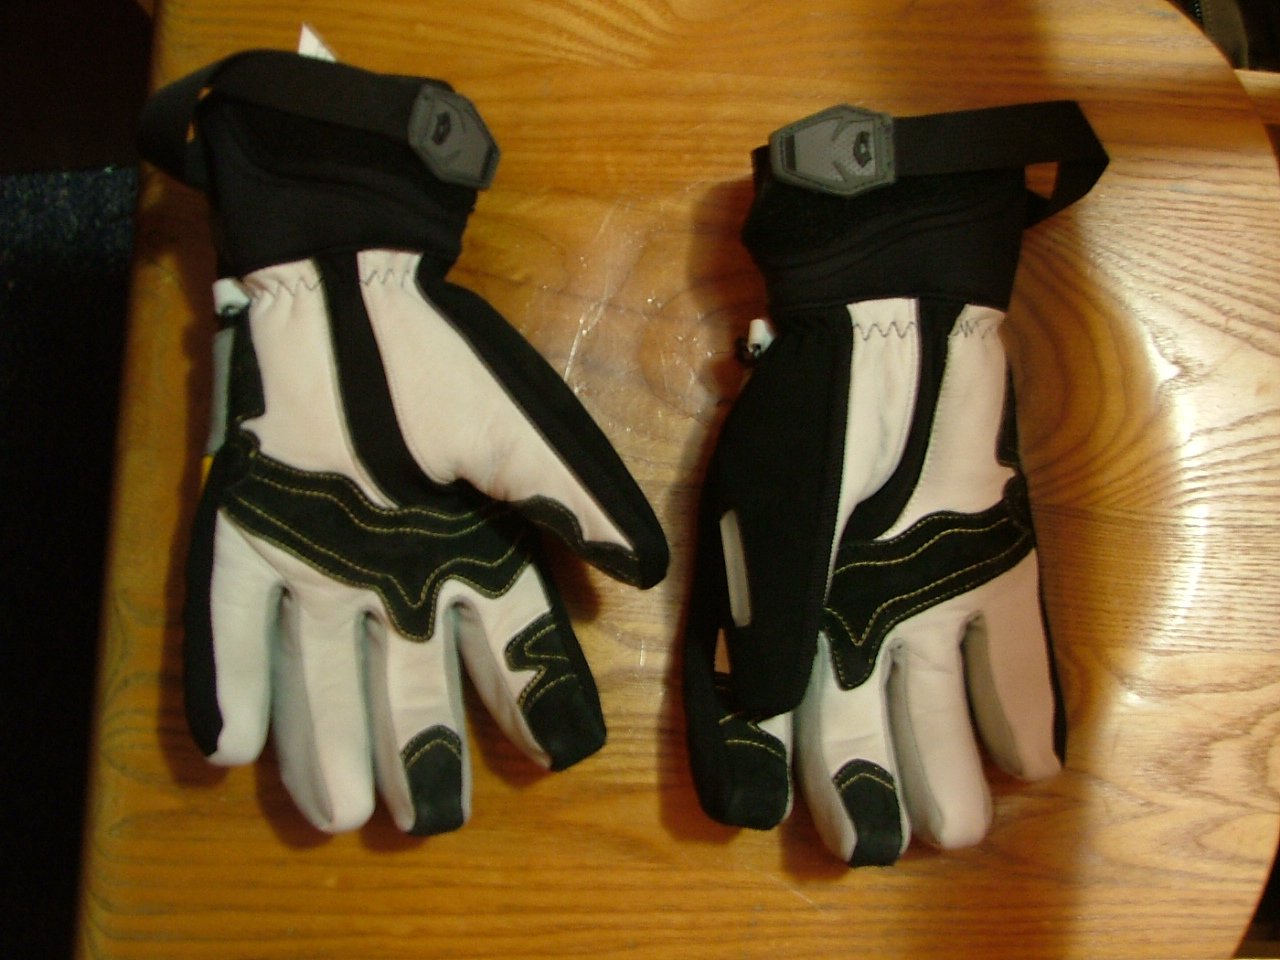 Gloves 2